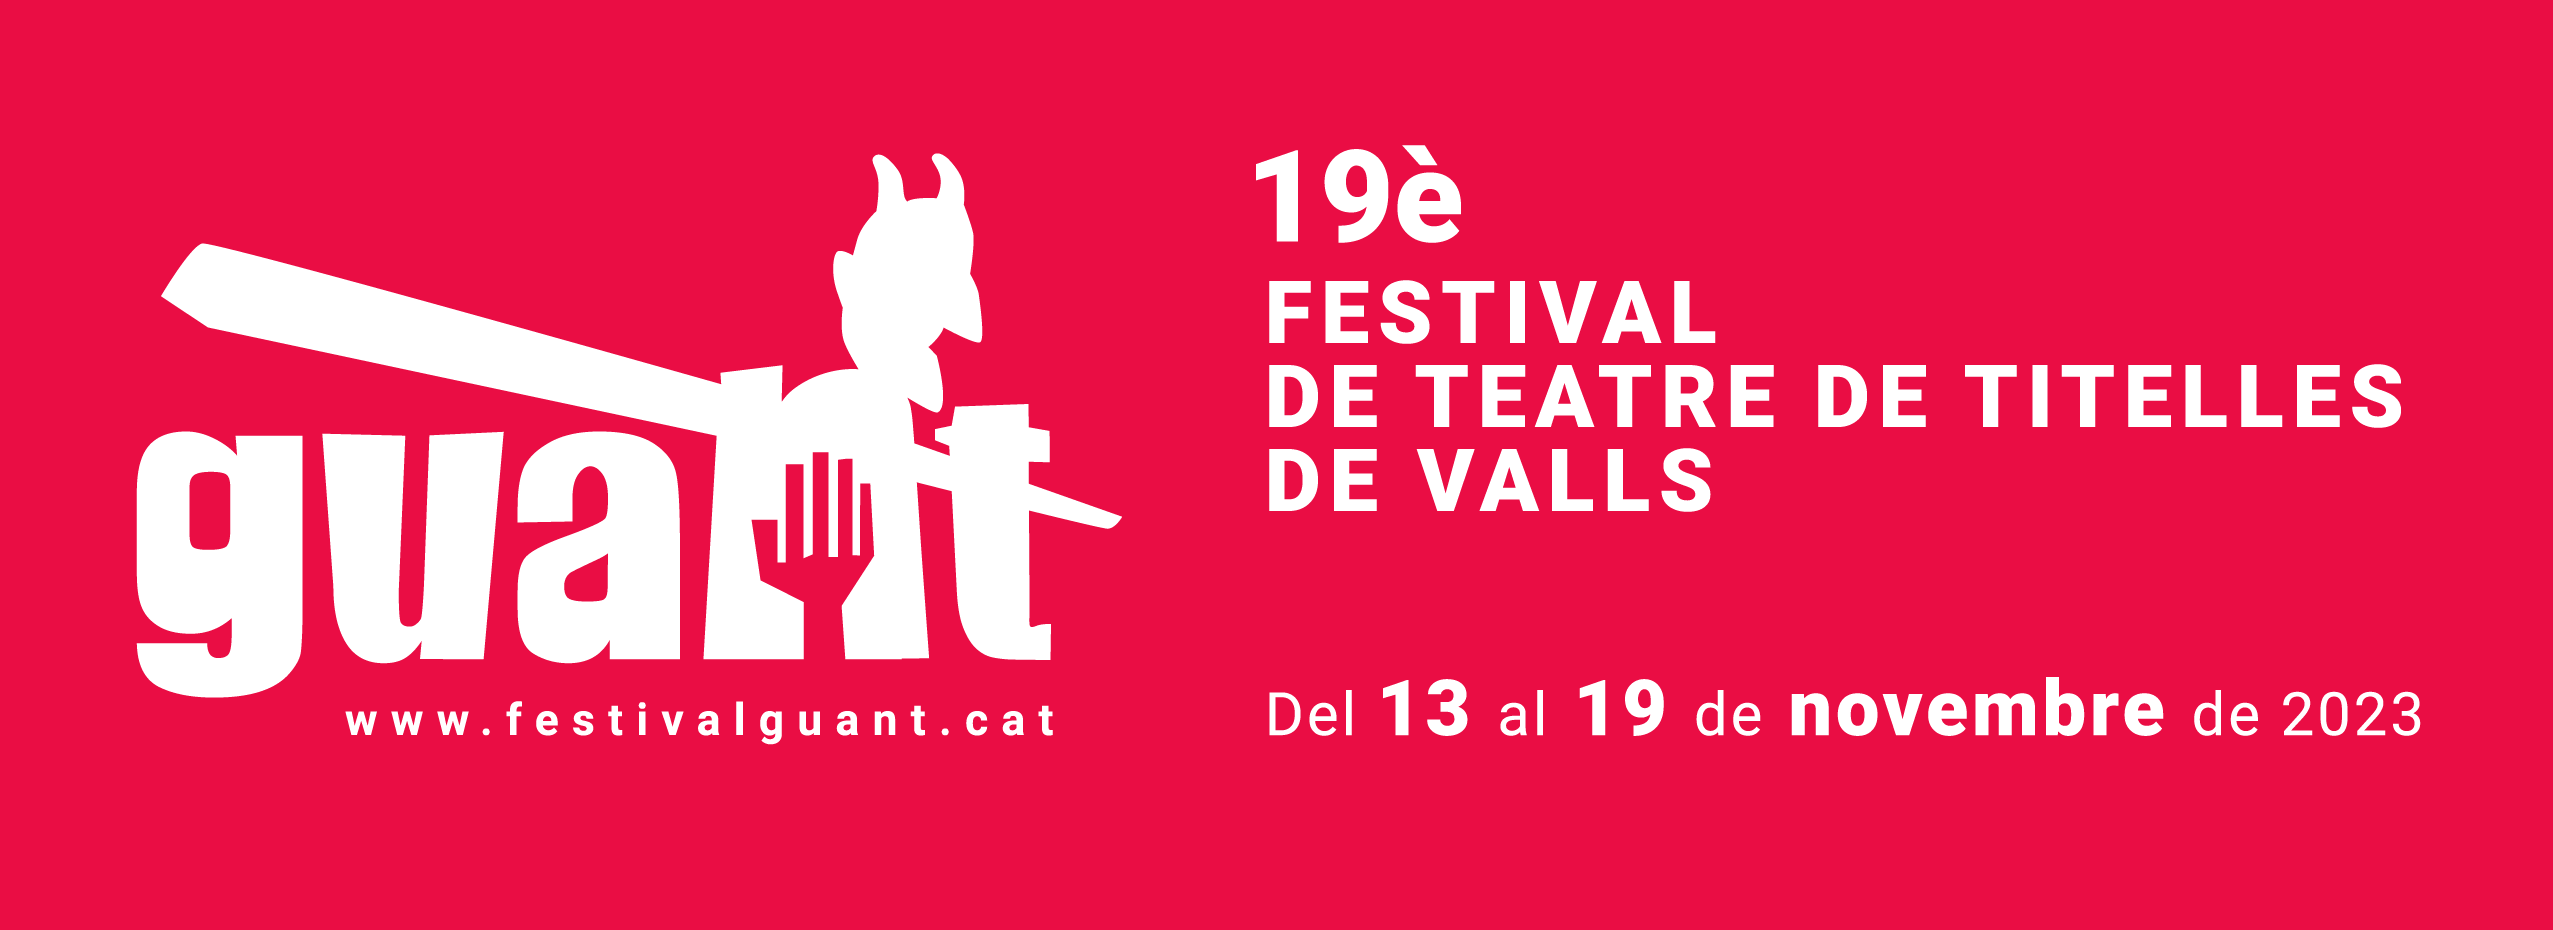 19è Festival internacional de teatre de titelles de Valls | IDENTITATS